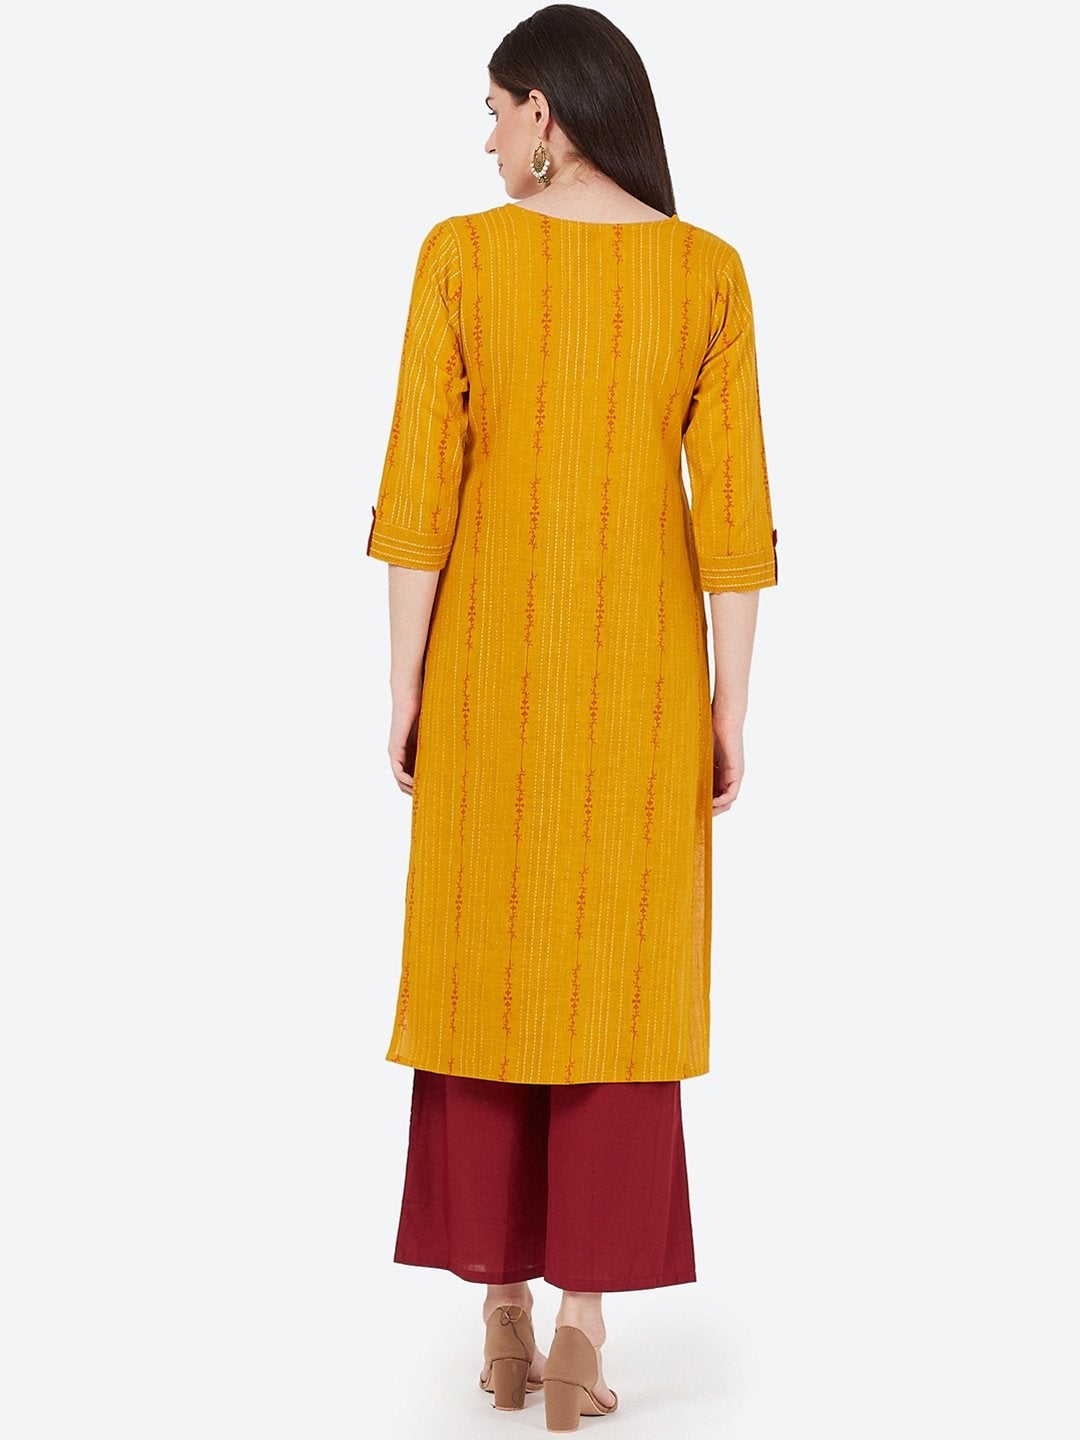 Women's Mustard Yellow Printed Straight Kurta - Meeranshi